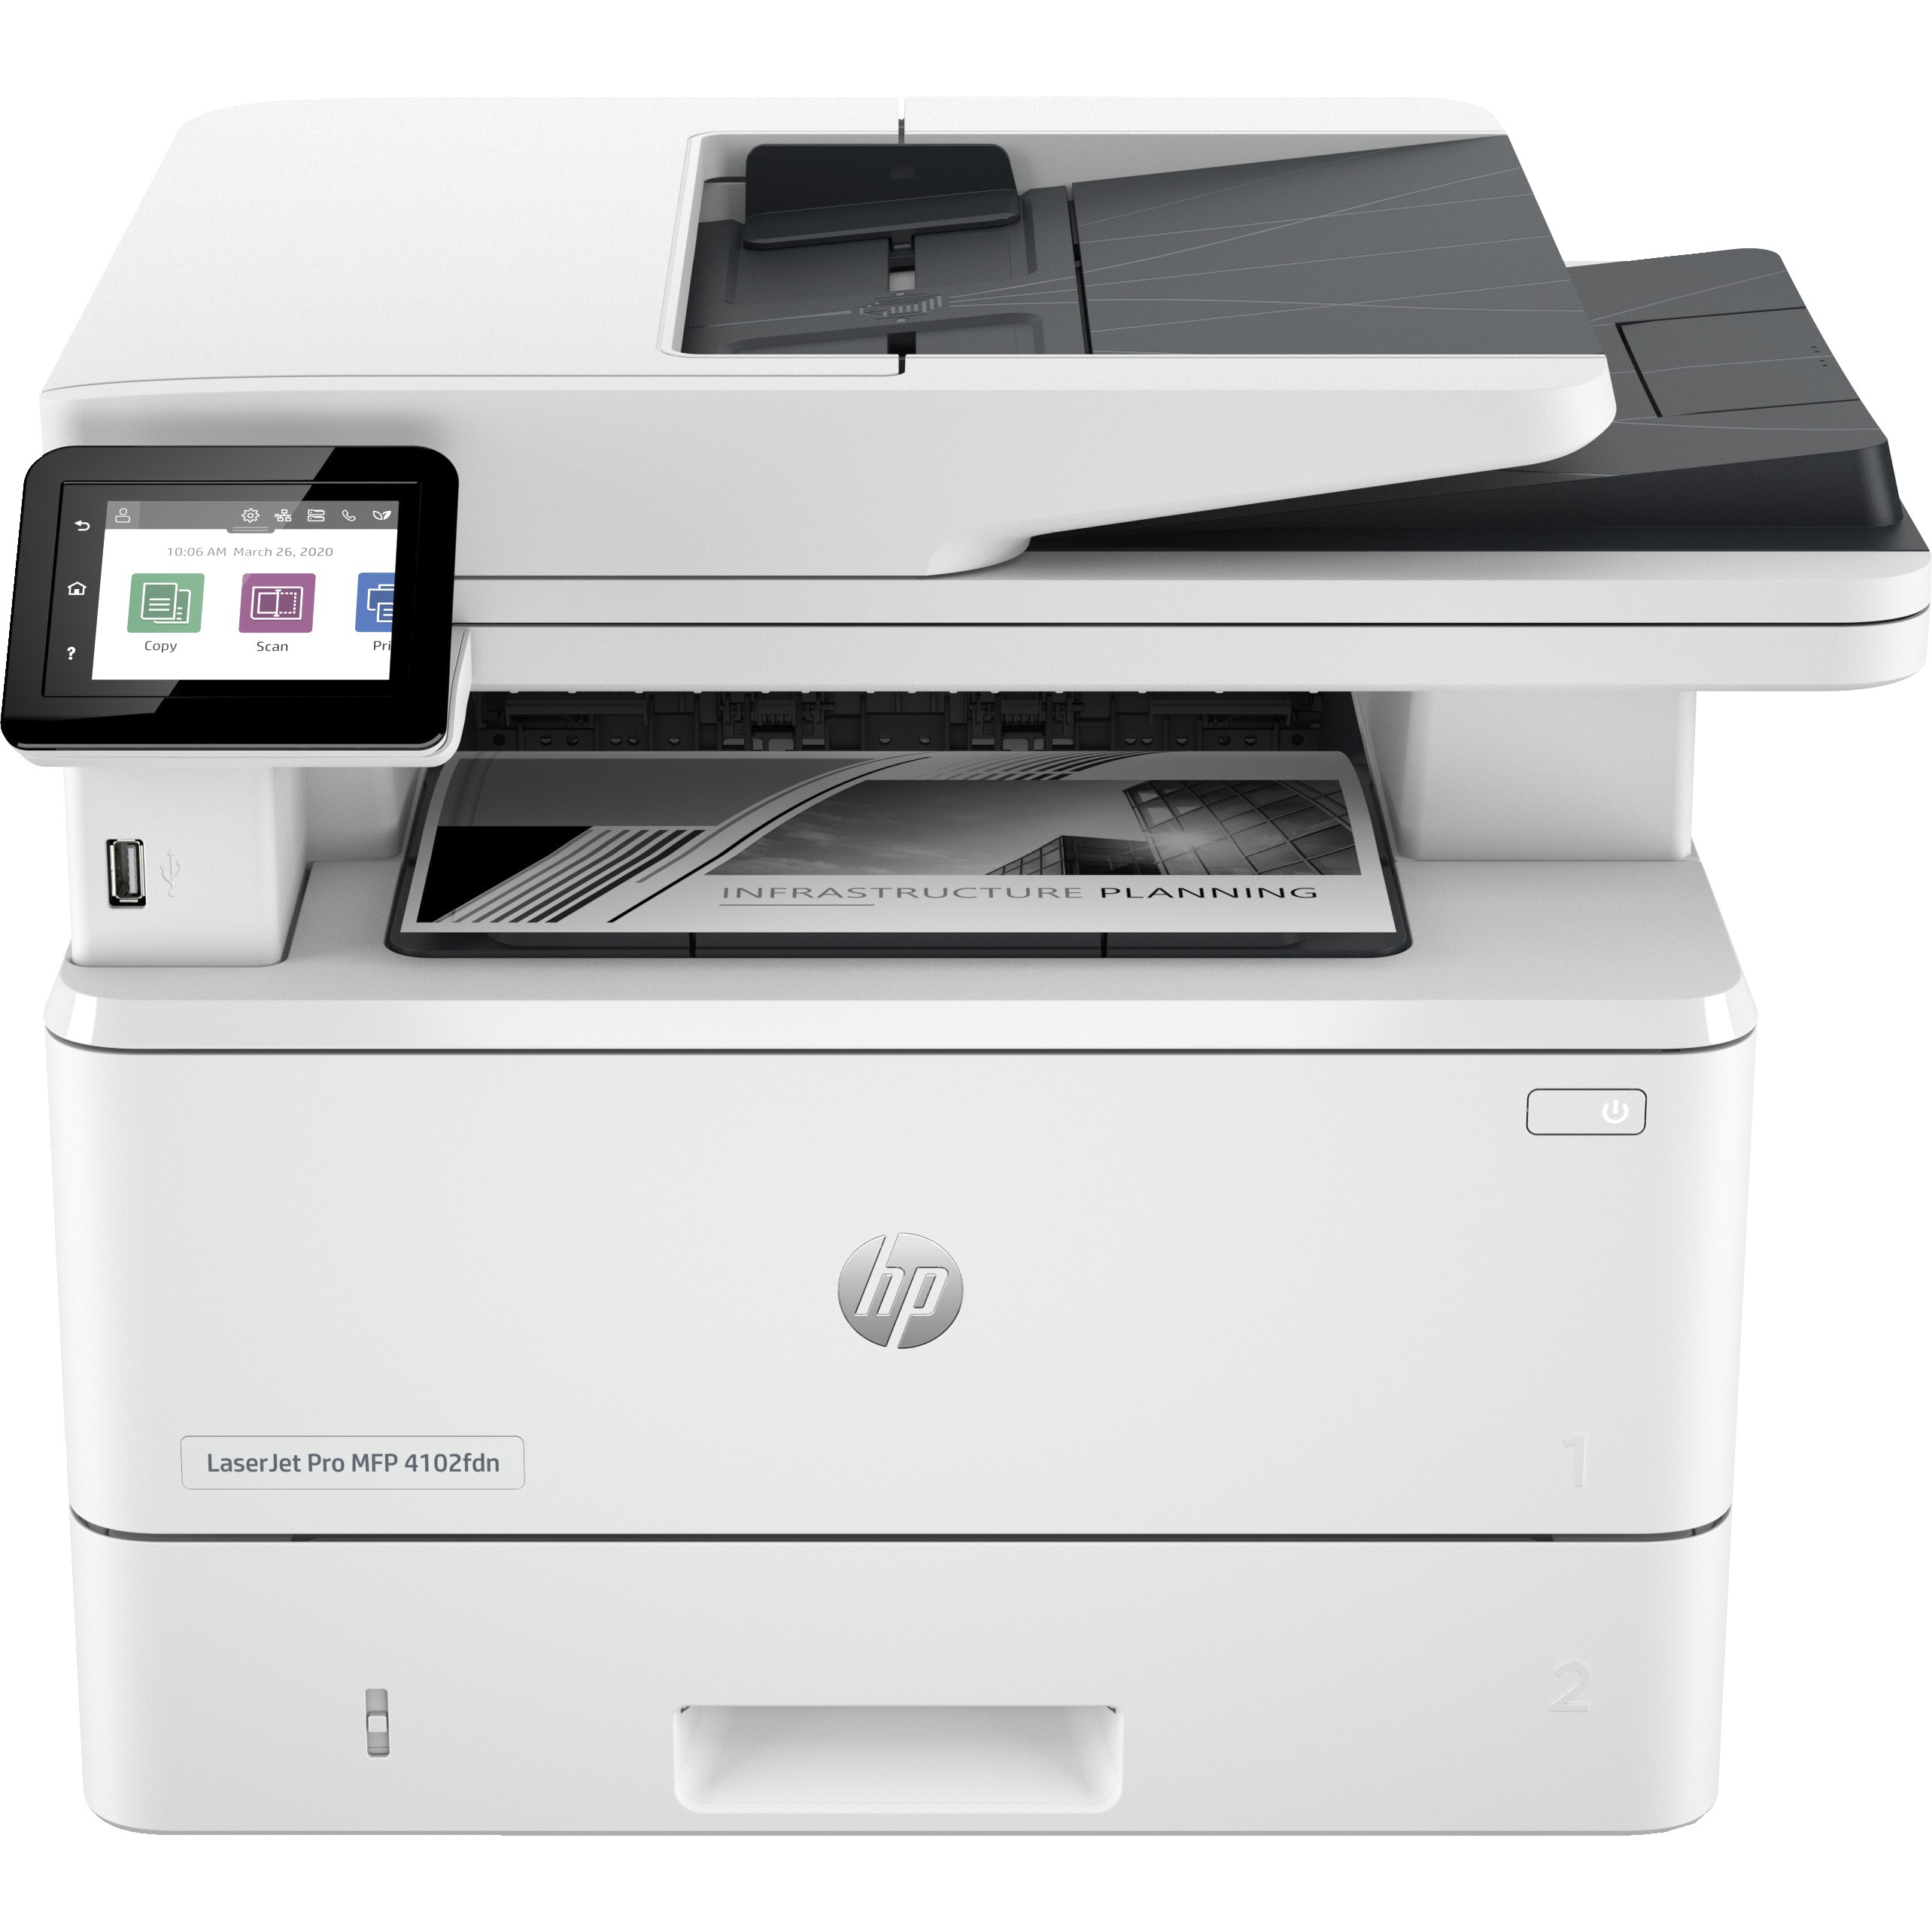 HP LaserJet Pro MFP 4102fdn Printer - 2Z623F#B19